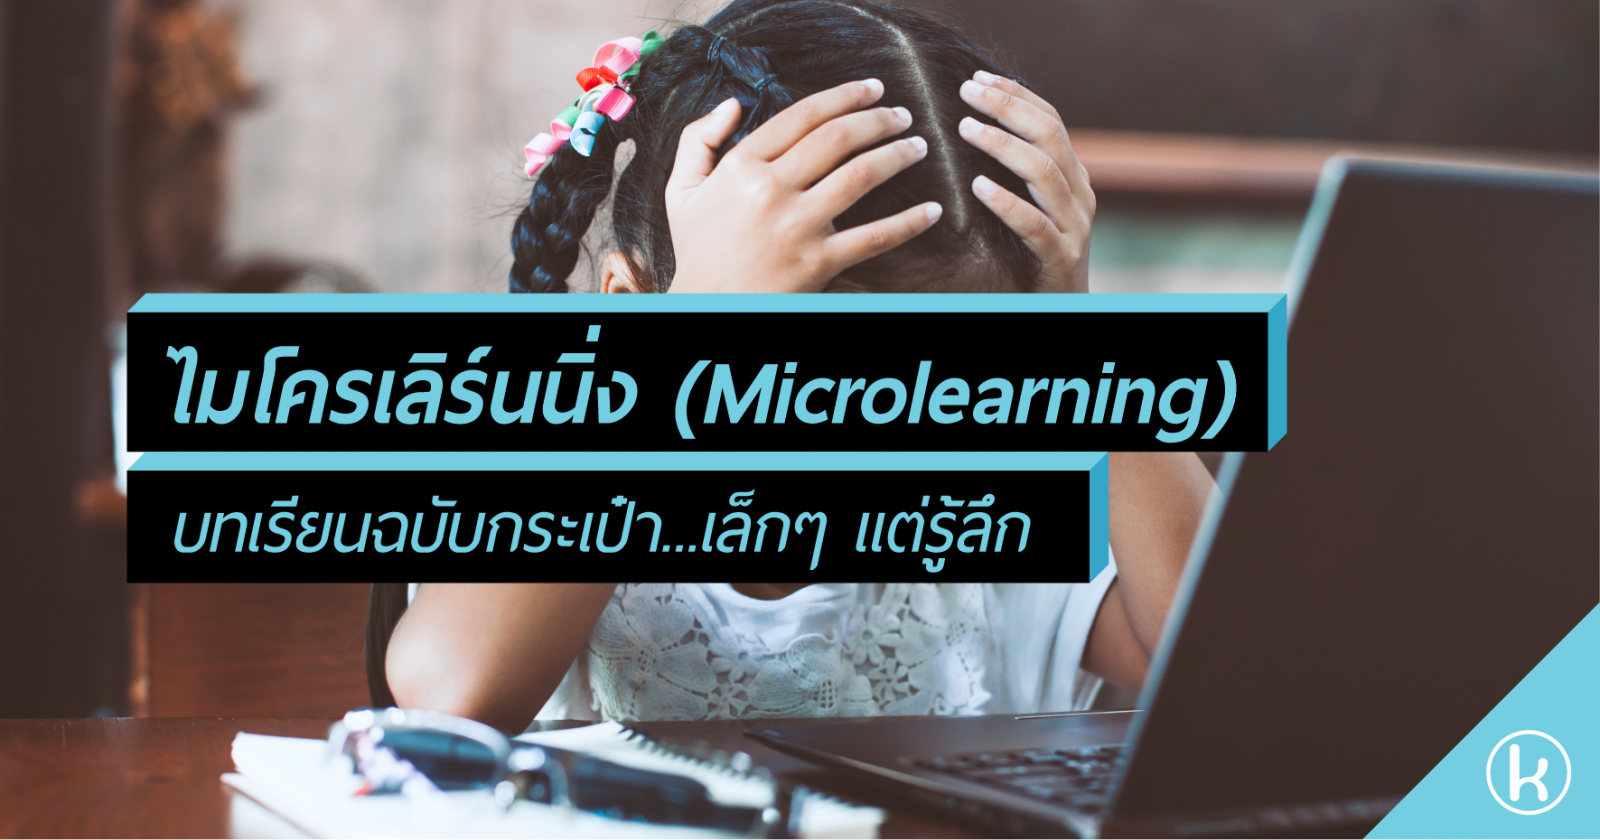 ไมโครเลิร์นนิ่ง (Microlearning): บทเรียนฉบับกระเป๋า...เล็กๆ แต่รู้ลึก